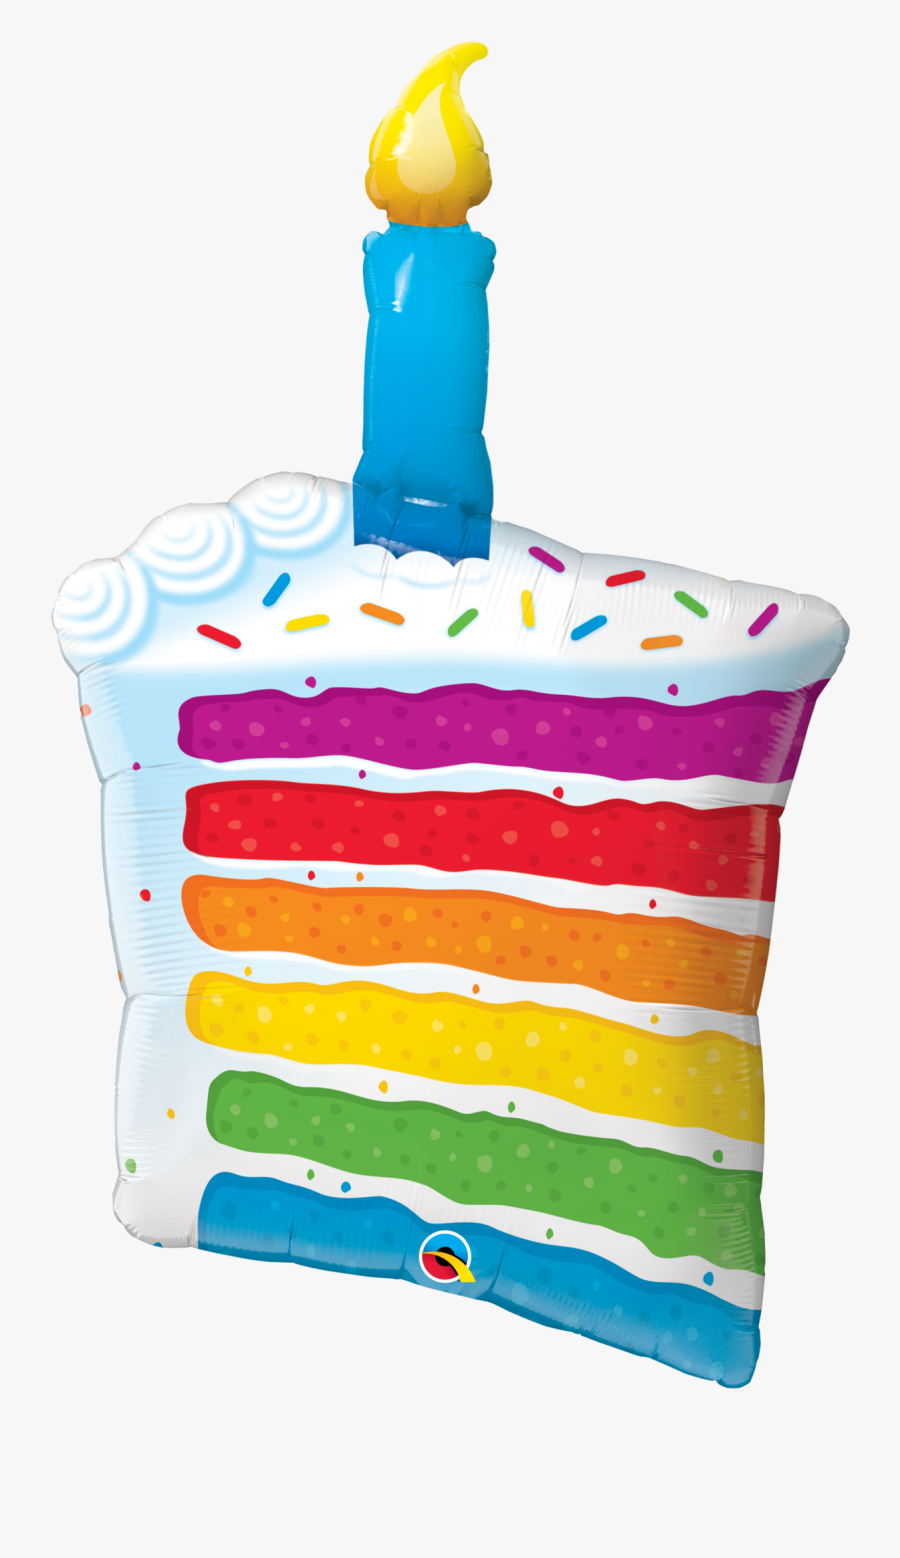 Rainbow Clipart Candle - Rainbow Birthday Cake Clipart, Transparent Clipart